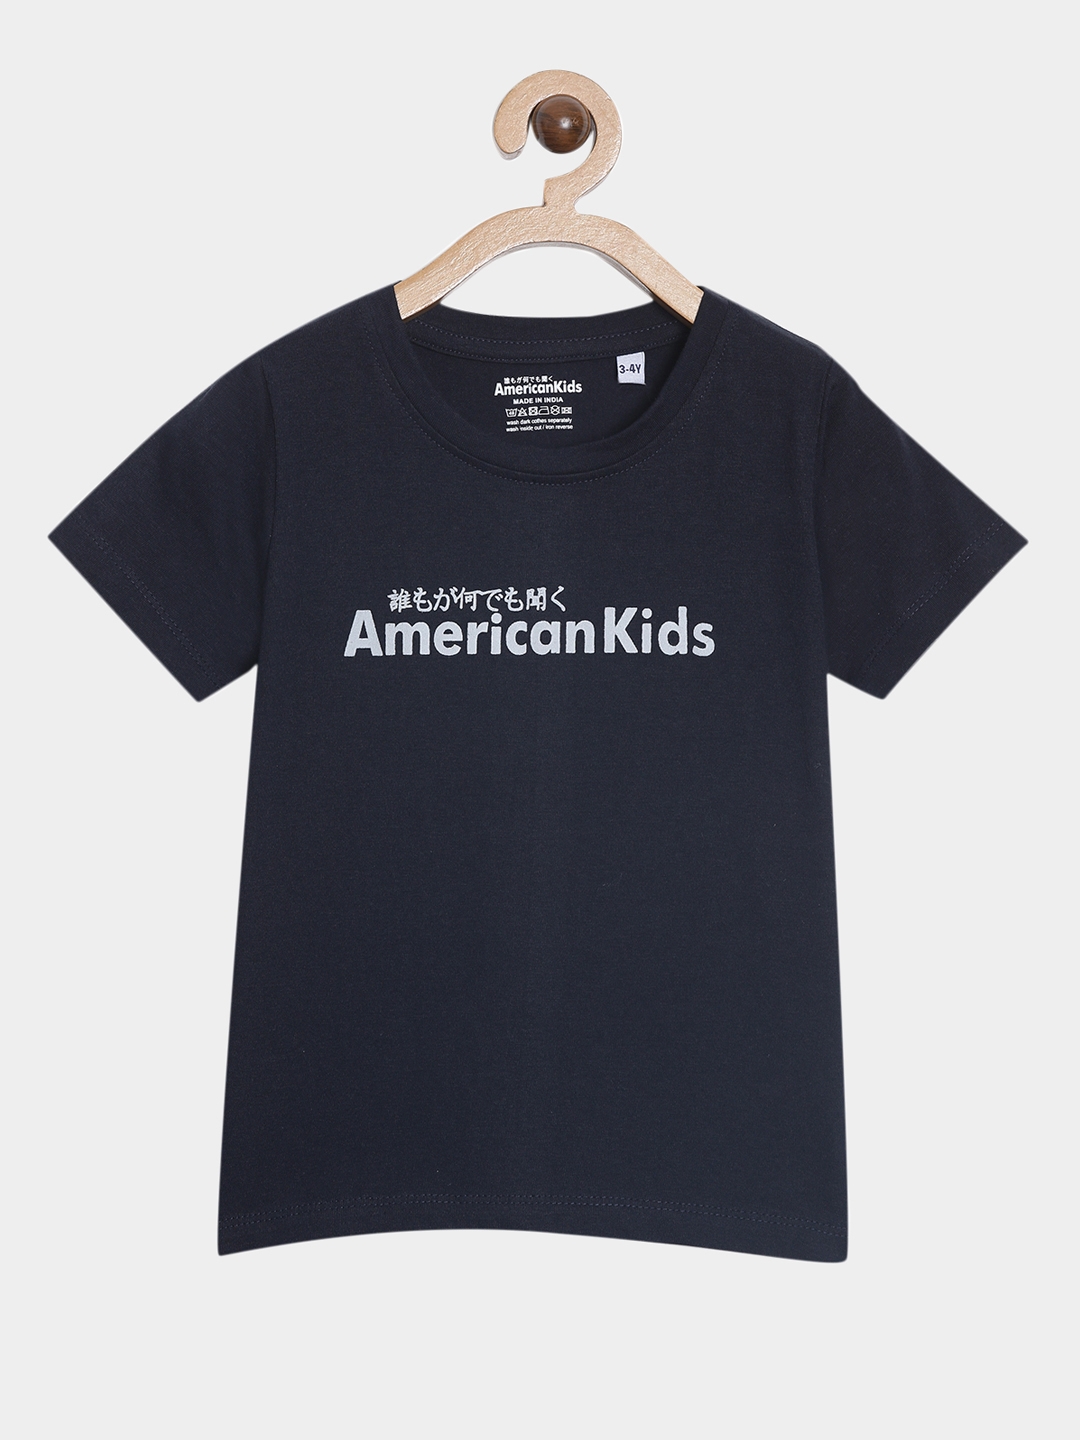 American Kids | Navy & Maroon Printed Co-Ords